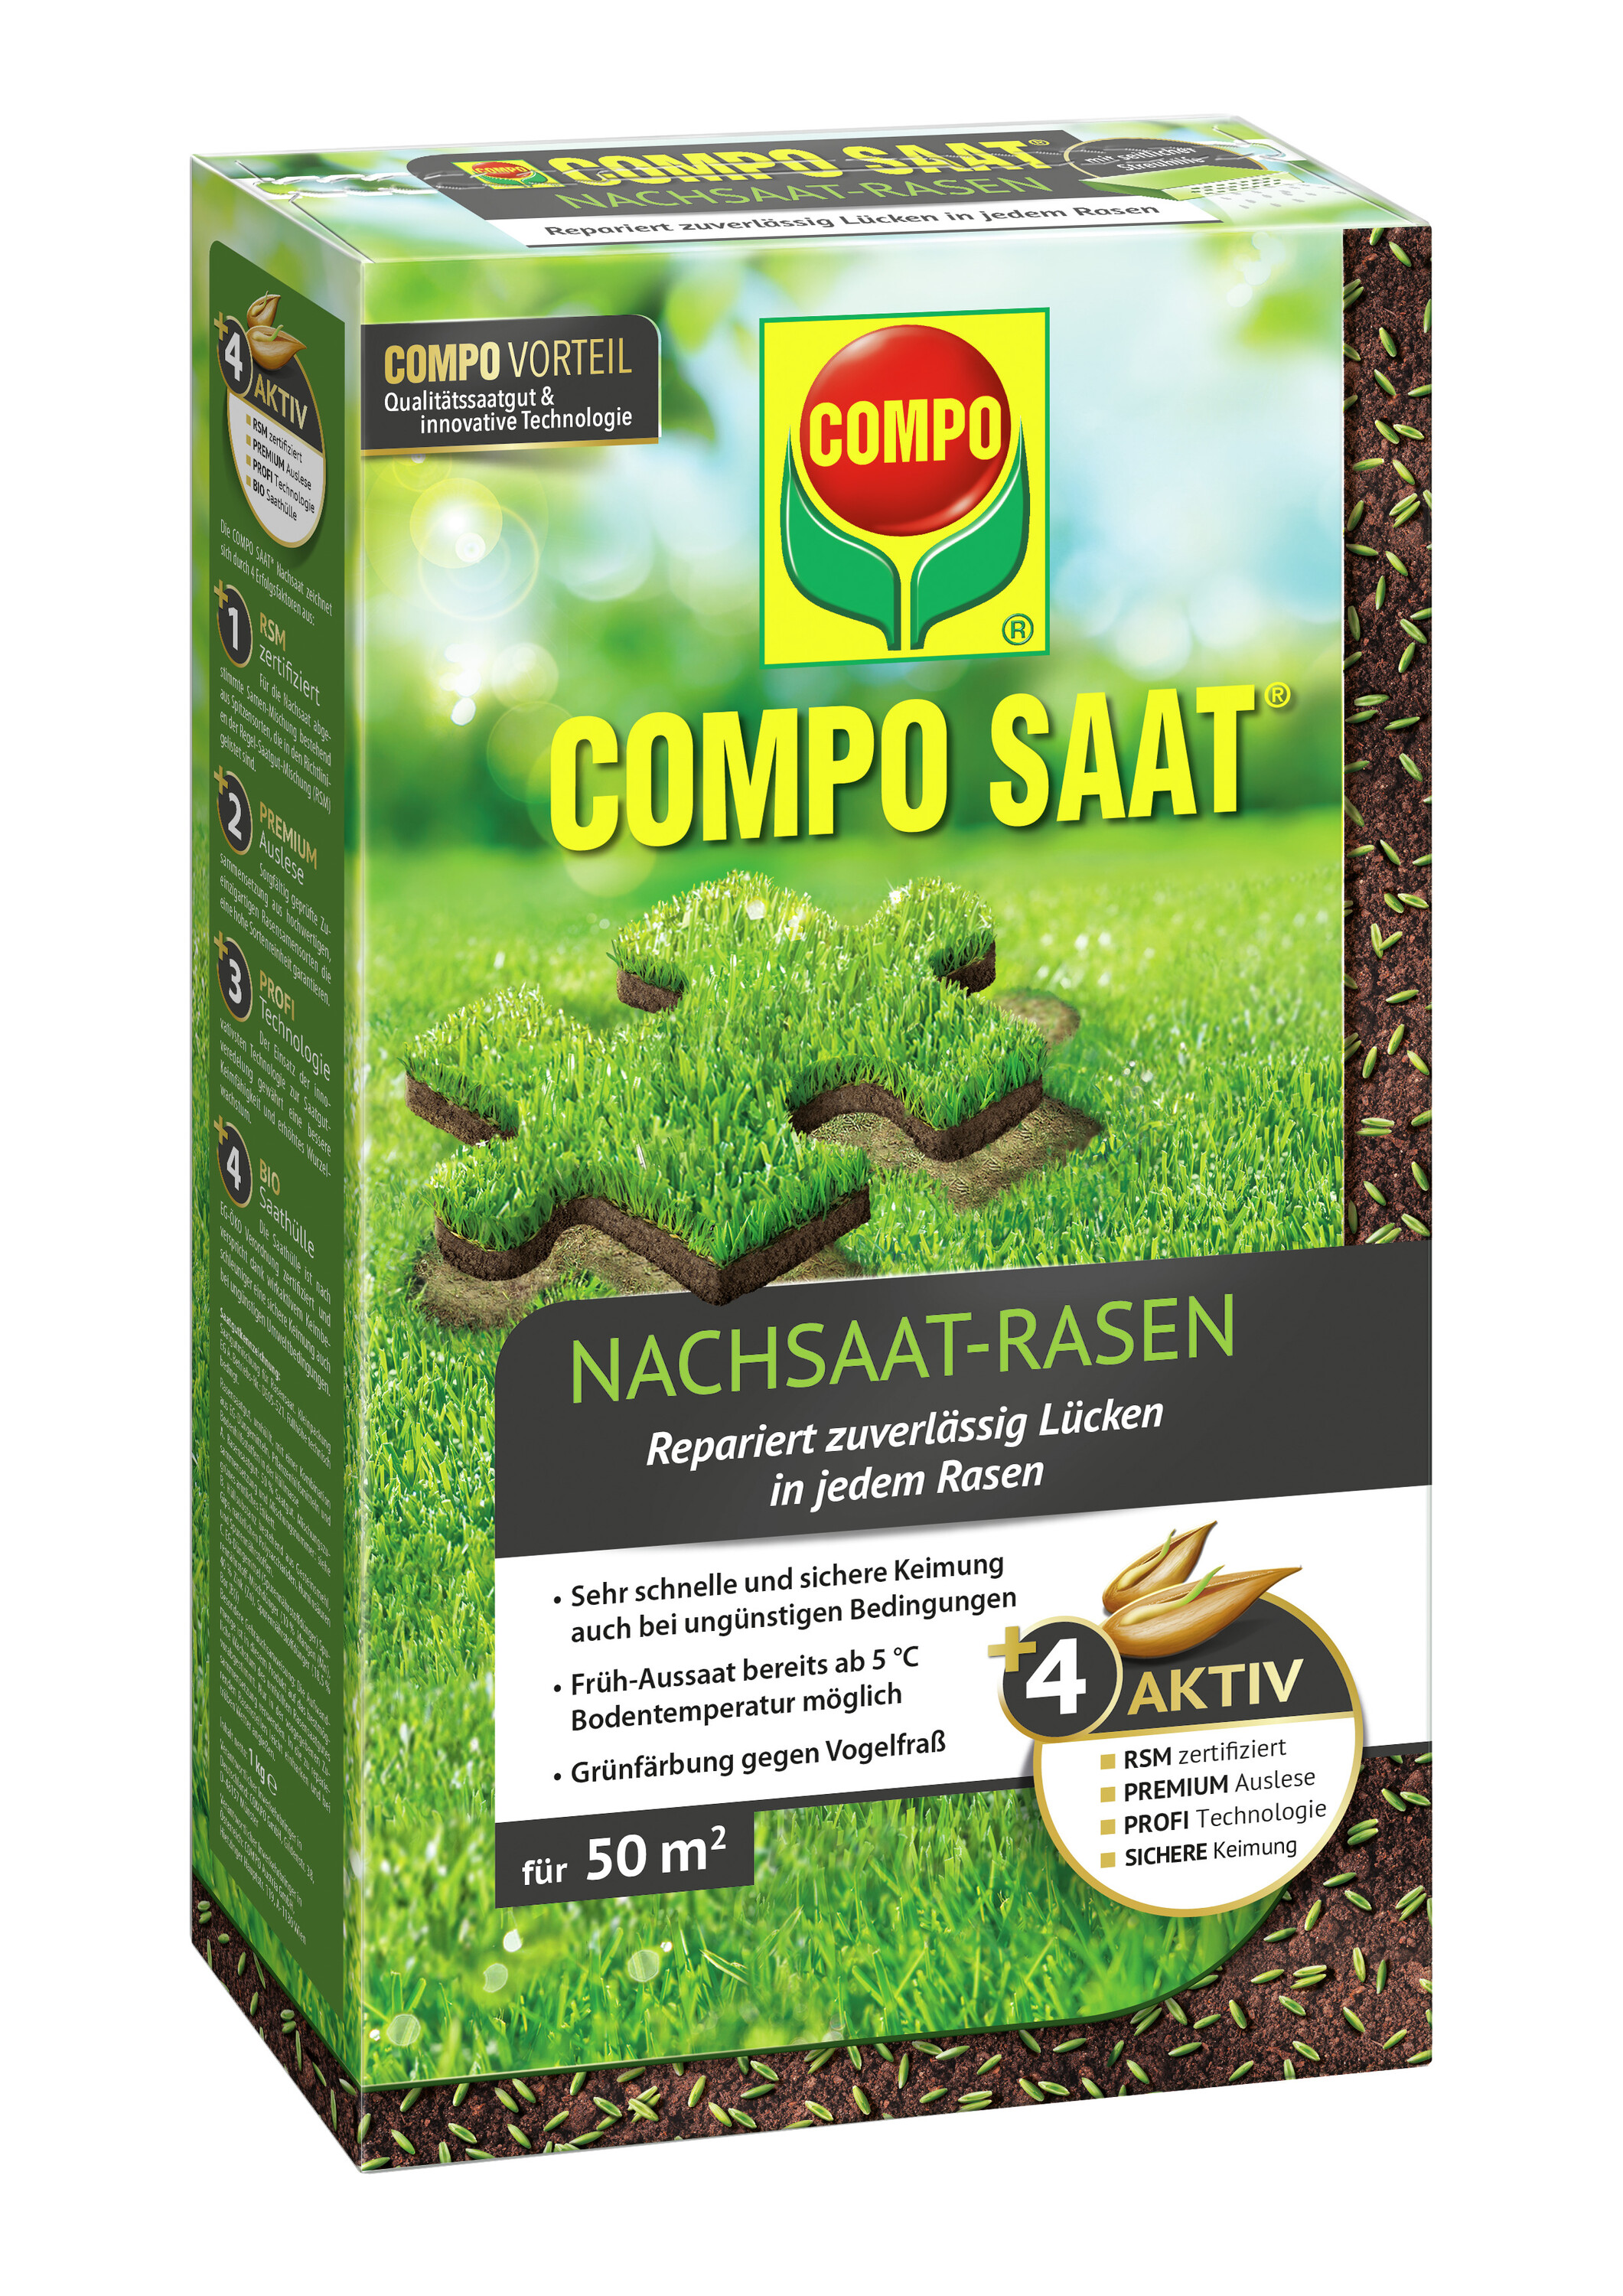 COMPO SAAT Nachsaat-Rasen,  1 kg für ca. 50 m²